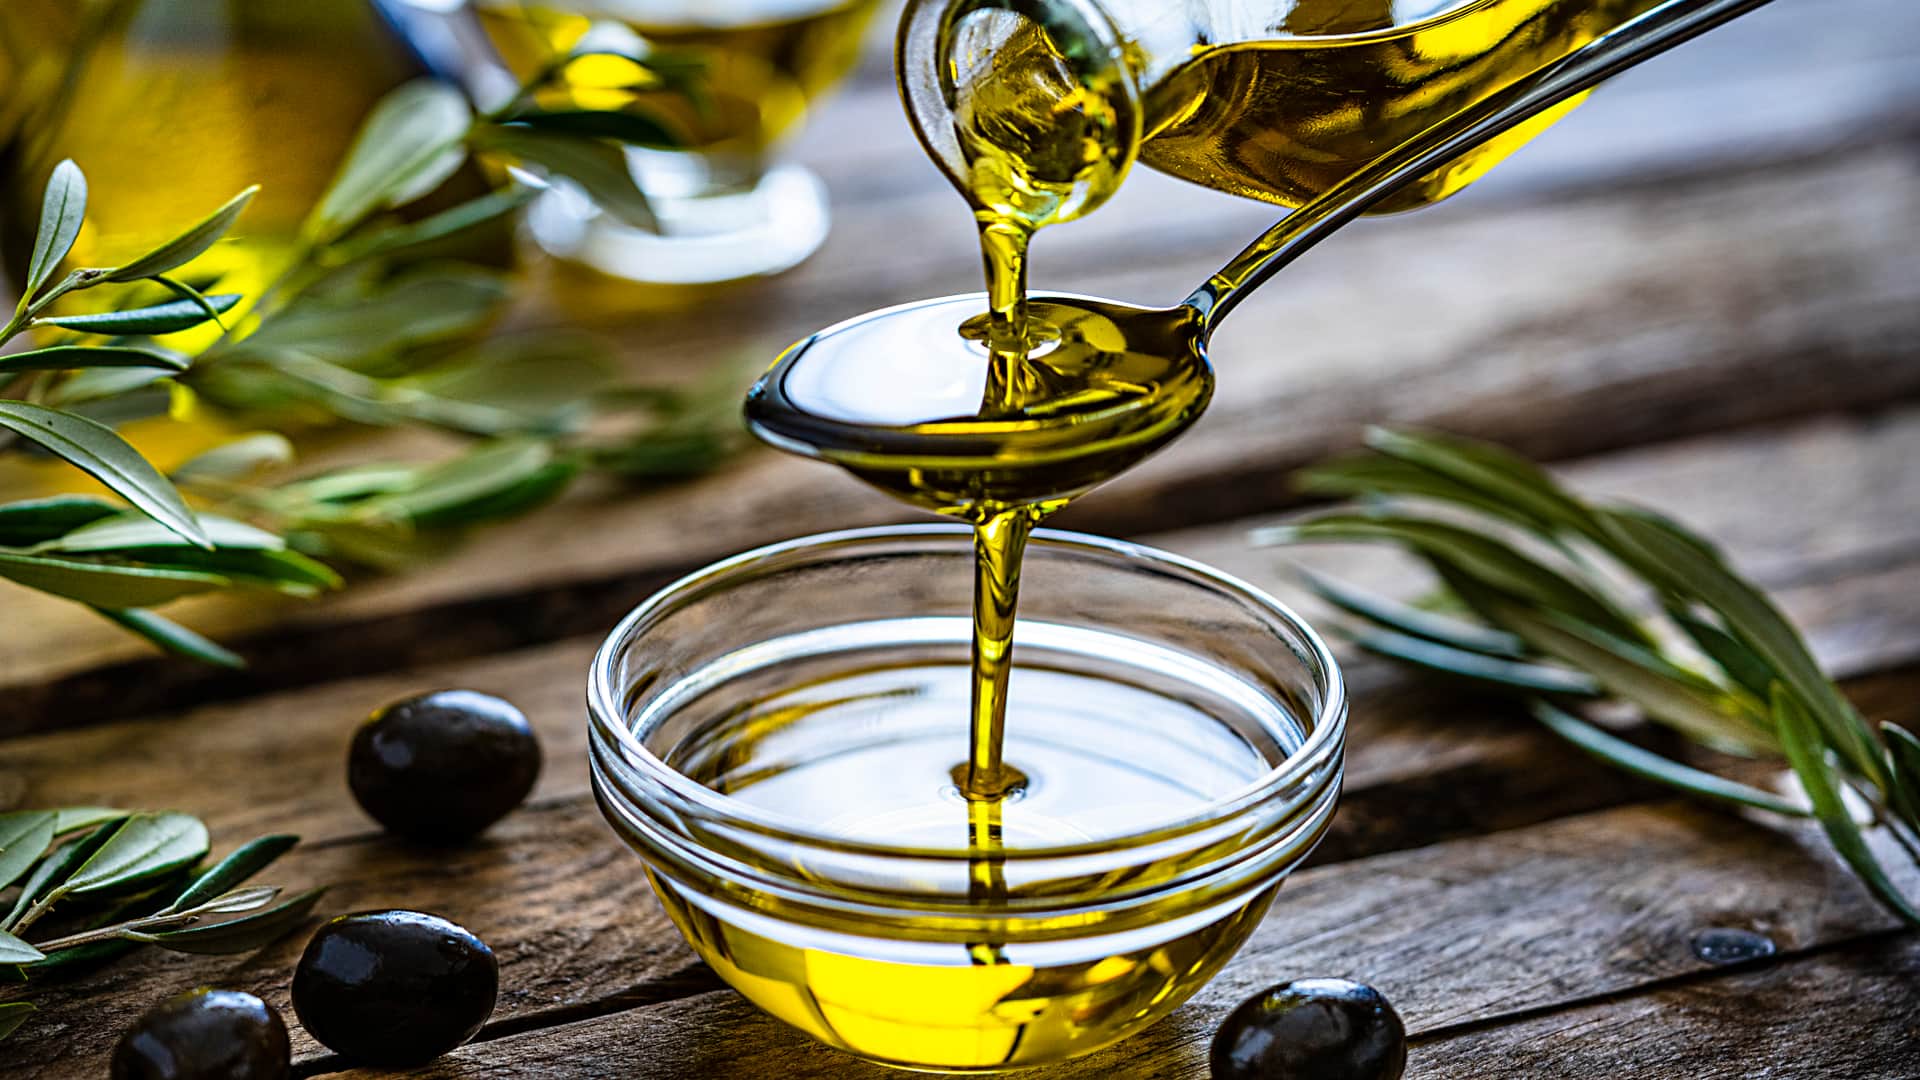 Aceite de oliva usado para cocinar y también puede usarse para hacer biodiesel casero